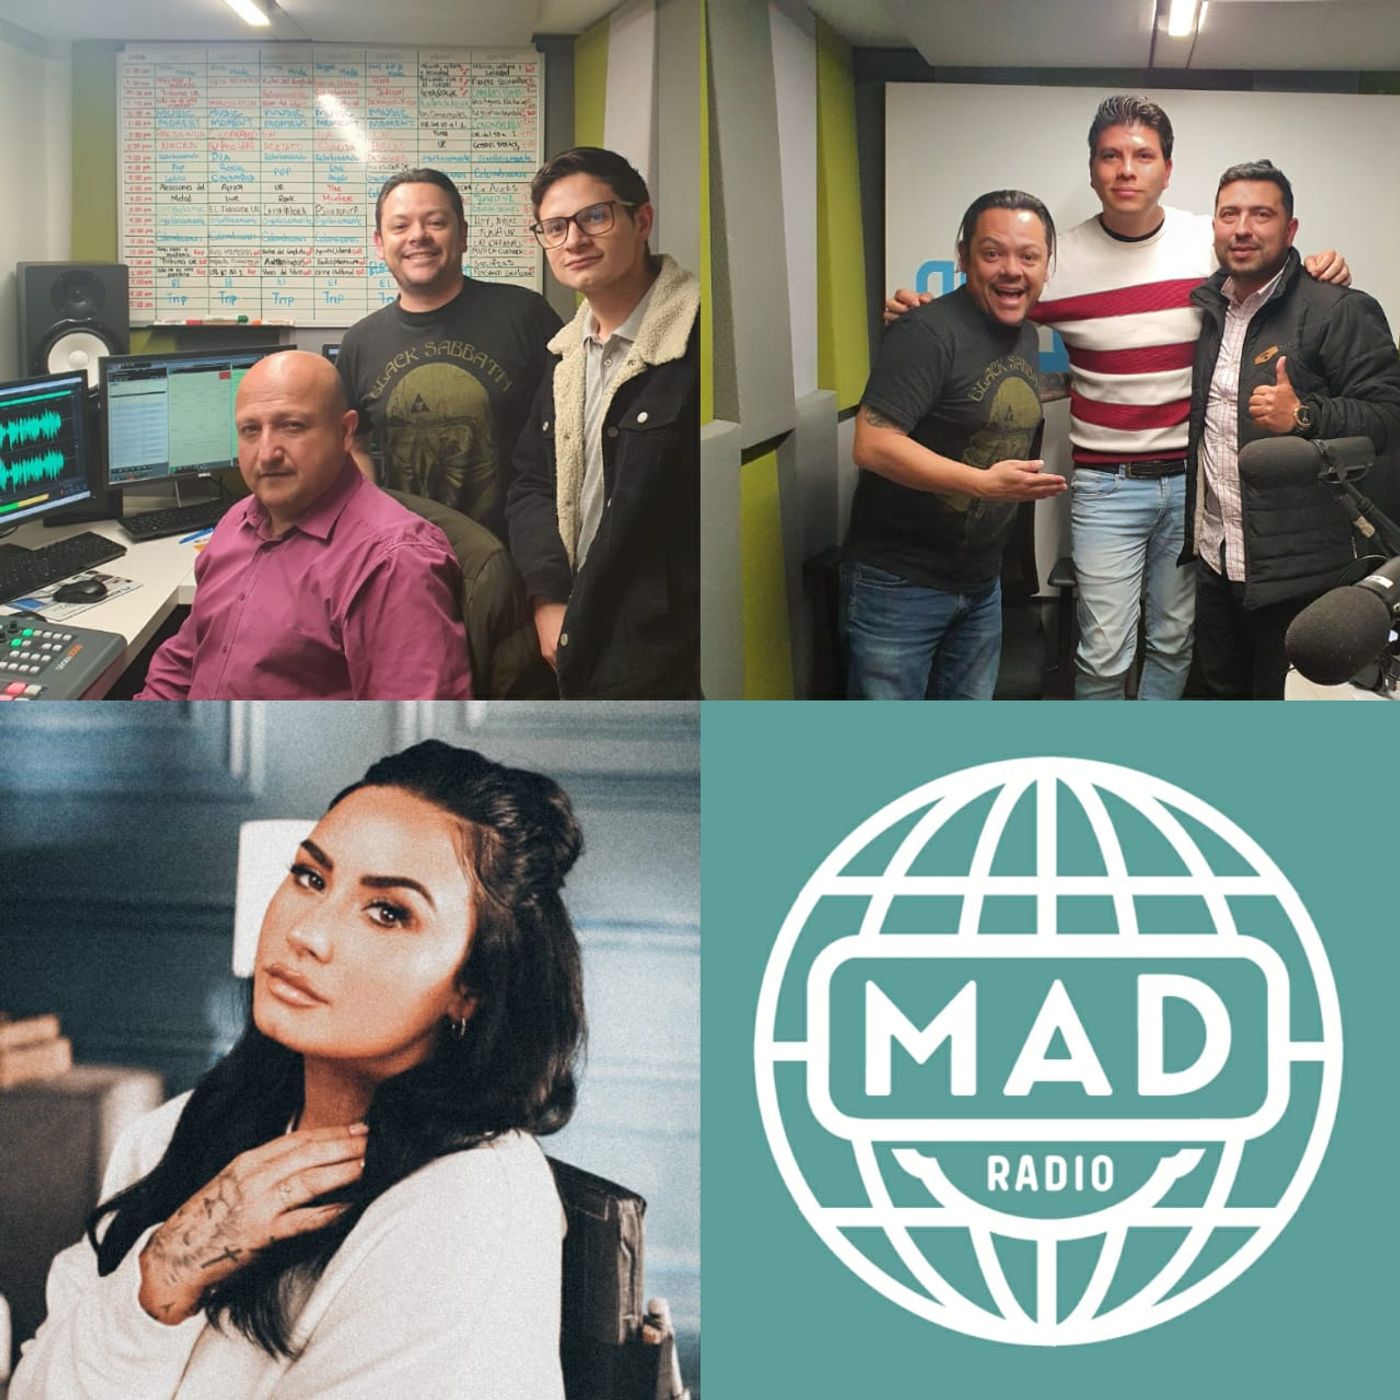 Mad Radio la rompe con sus experiencias sonoras, noticias de Colegio de Abogados Rosaristas, UR Internacional y AsoRosario